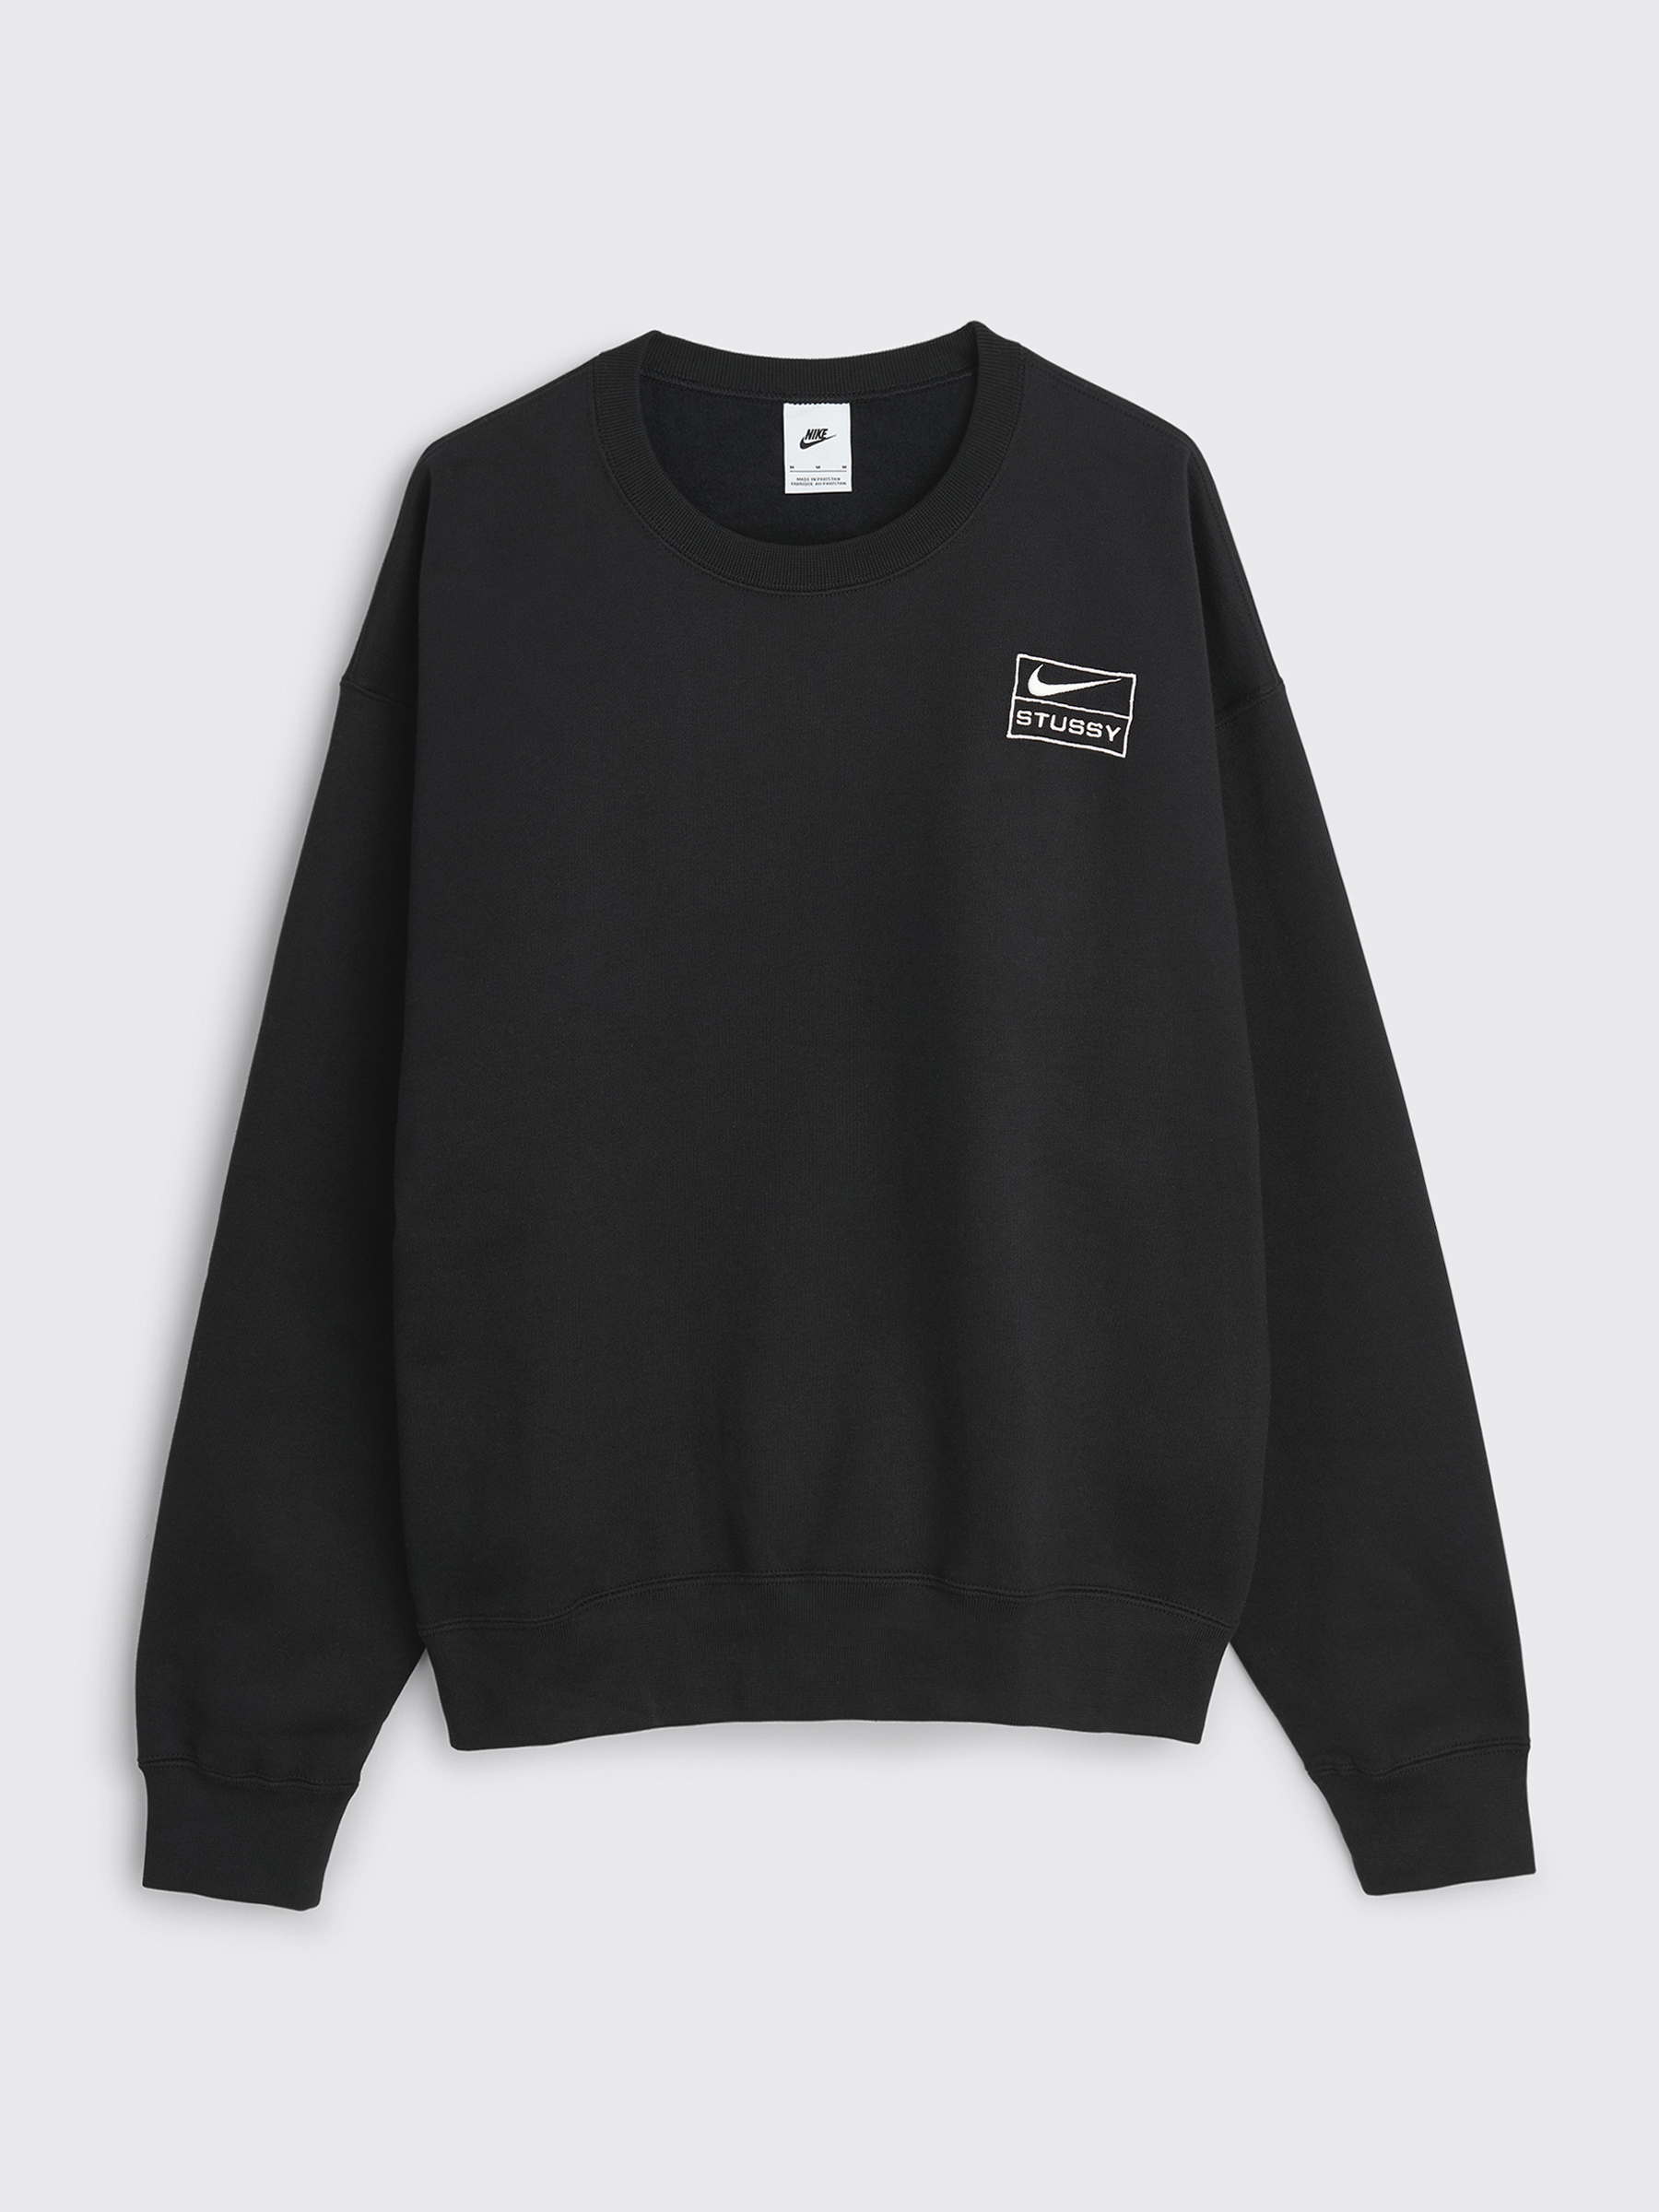 Nike x Stüssy Washed Fleece Crew Sweater Black